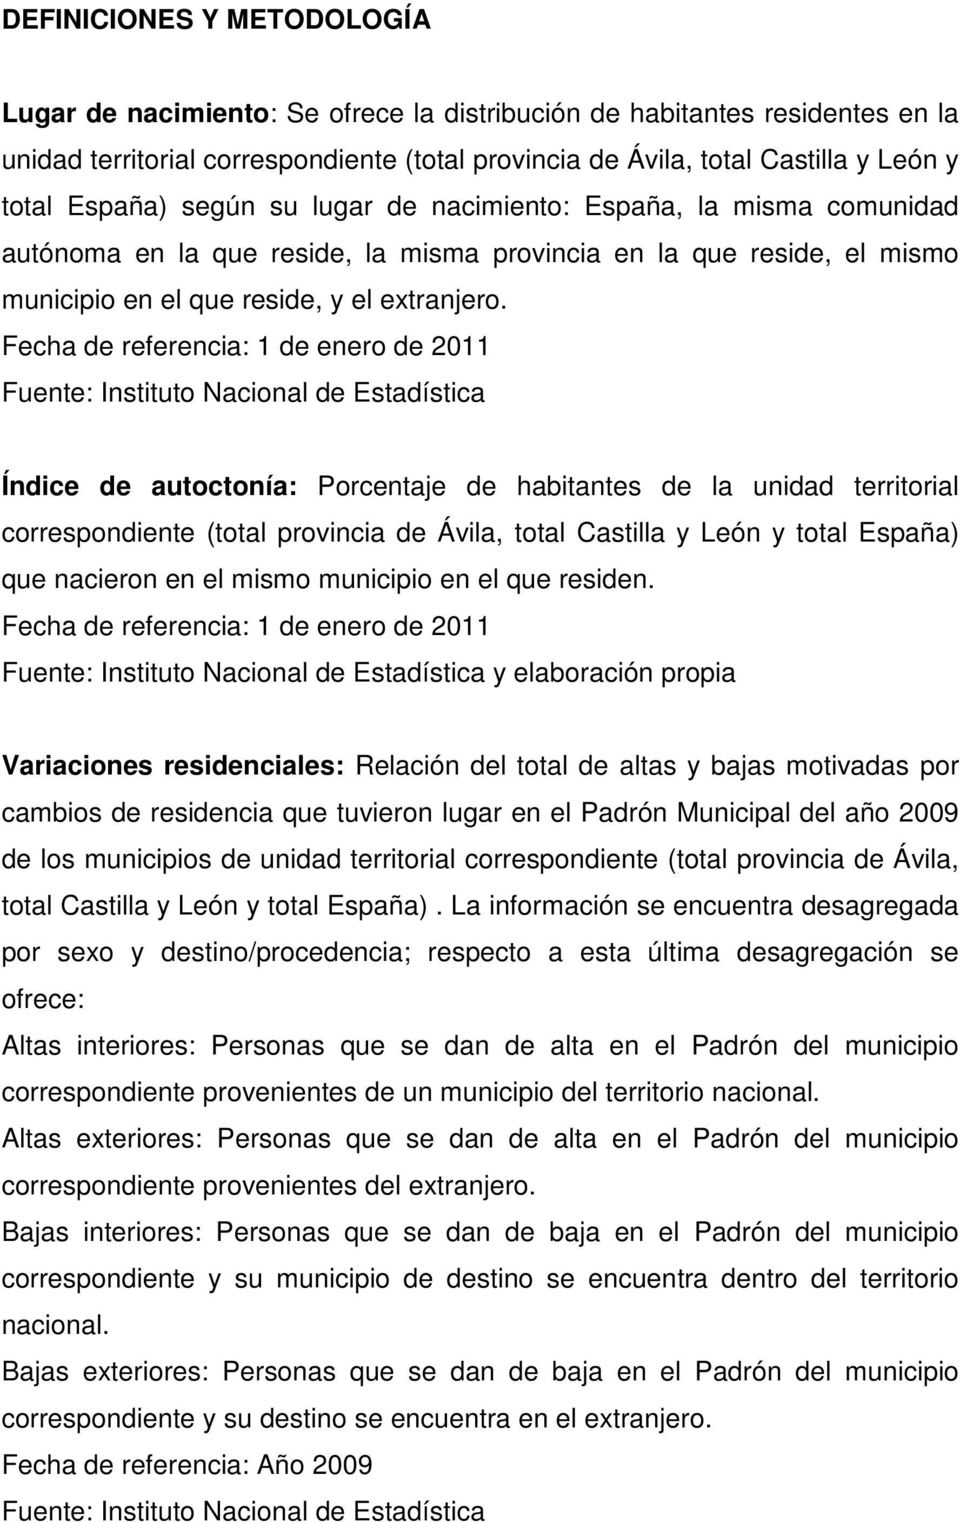 Fecha de referencia: 1 de enero de 2011 Índice de autoctonía: Porcentaje de habitantes de la unidad territorial correspondiente (total provincia de Ávila, total Castilla y León y total España) que